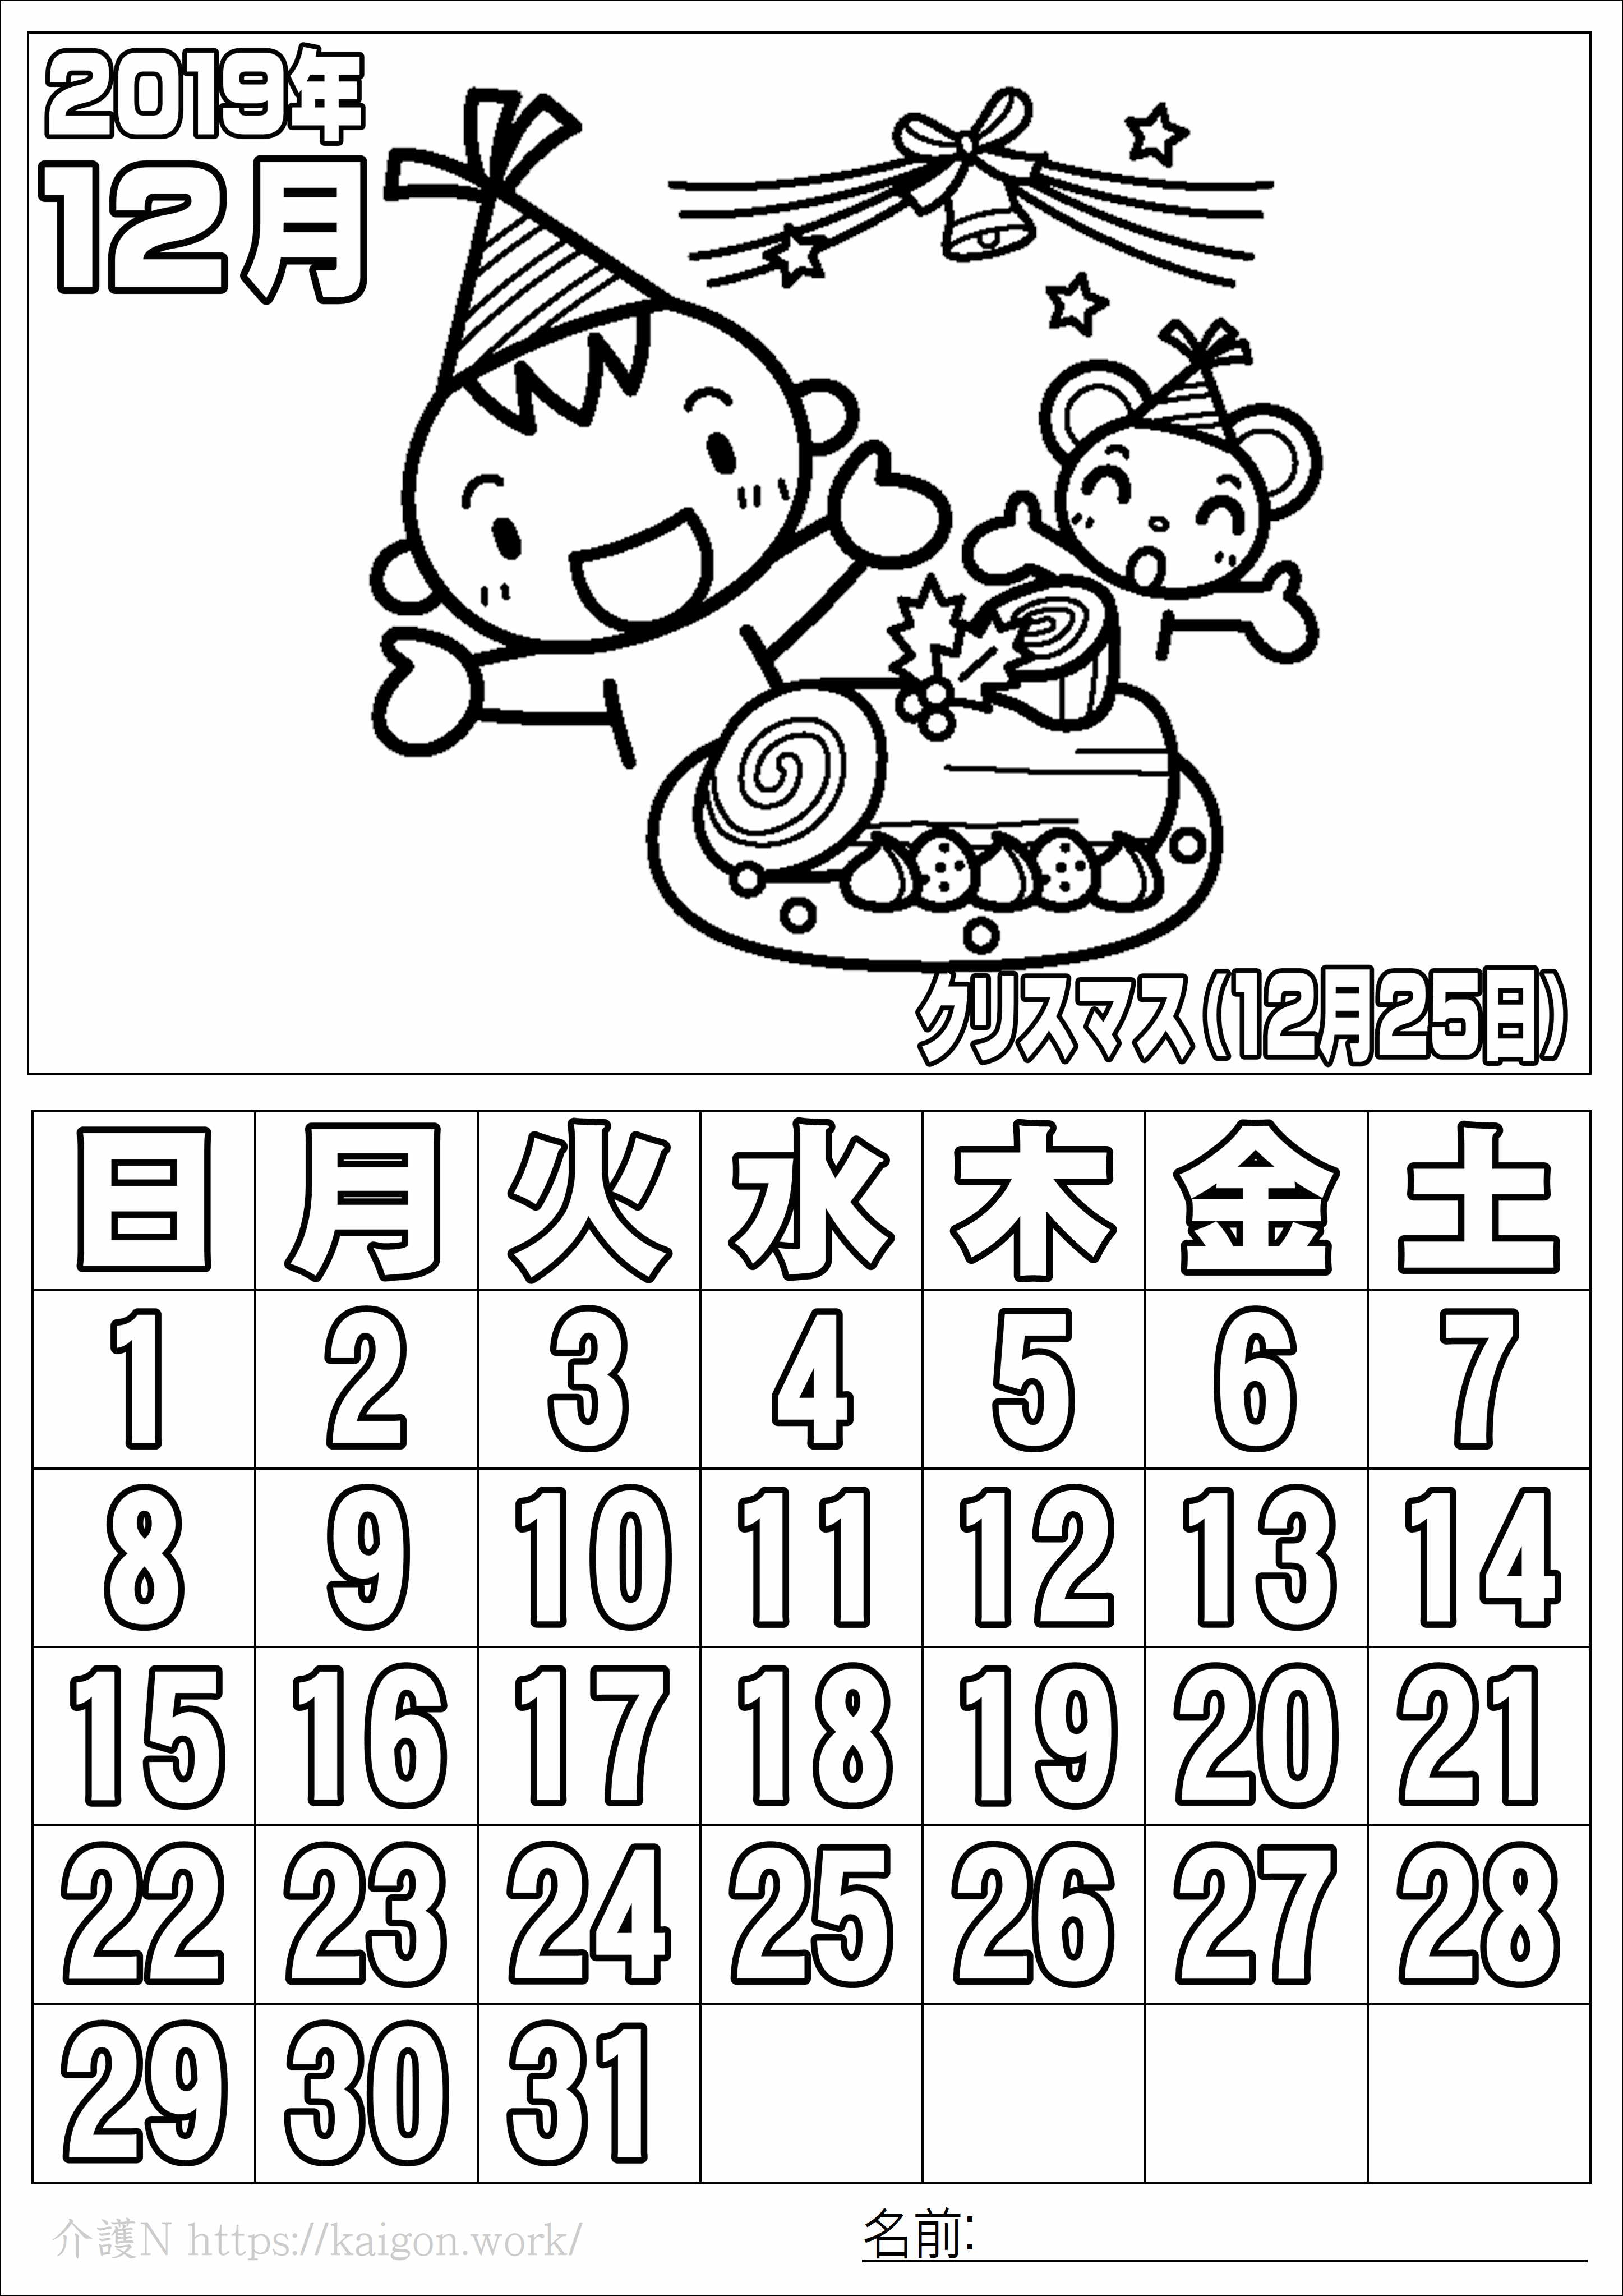 19 12 カレンダー エクセルカレンダーの無料テンプレート集 年間 月間カレンダー Amp Petmd Com